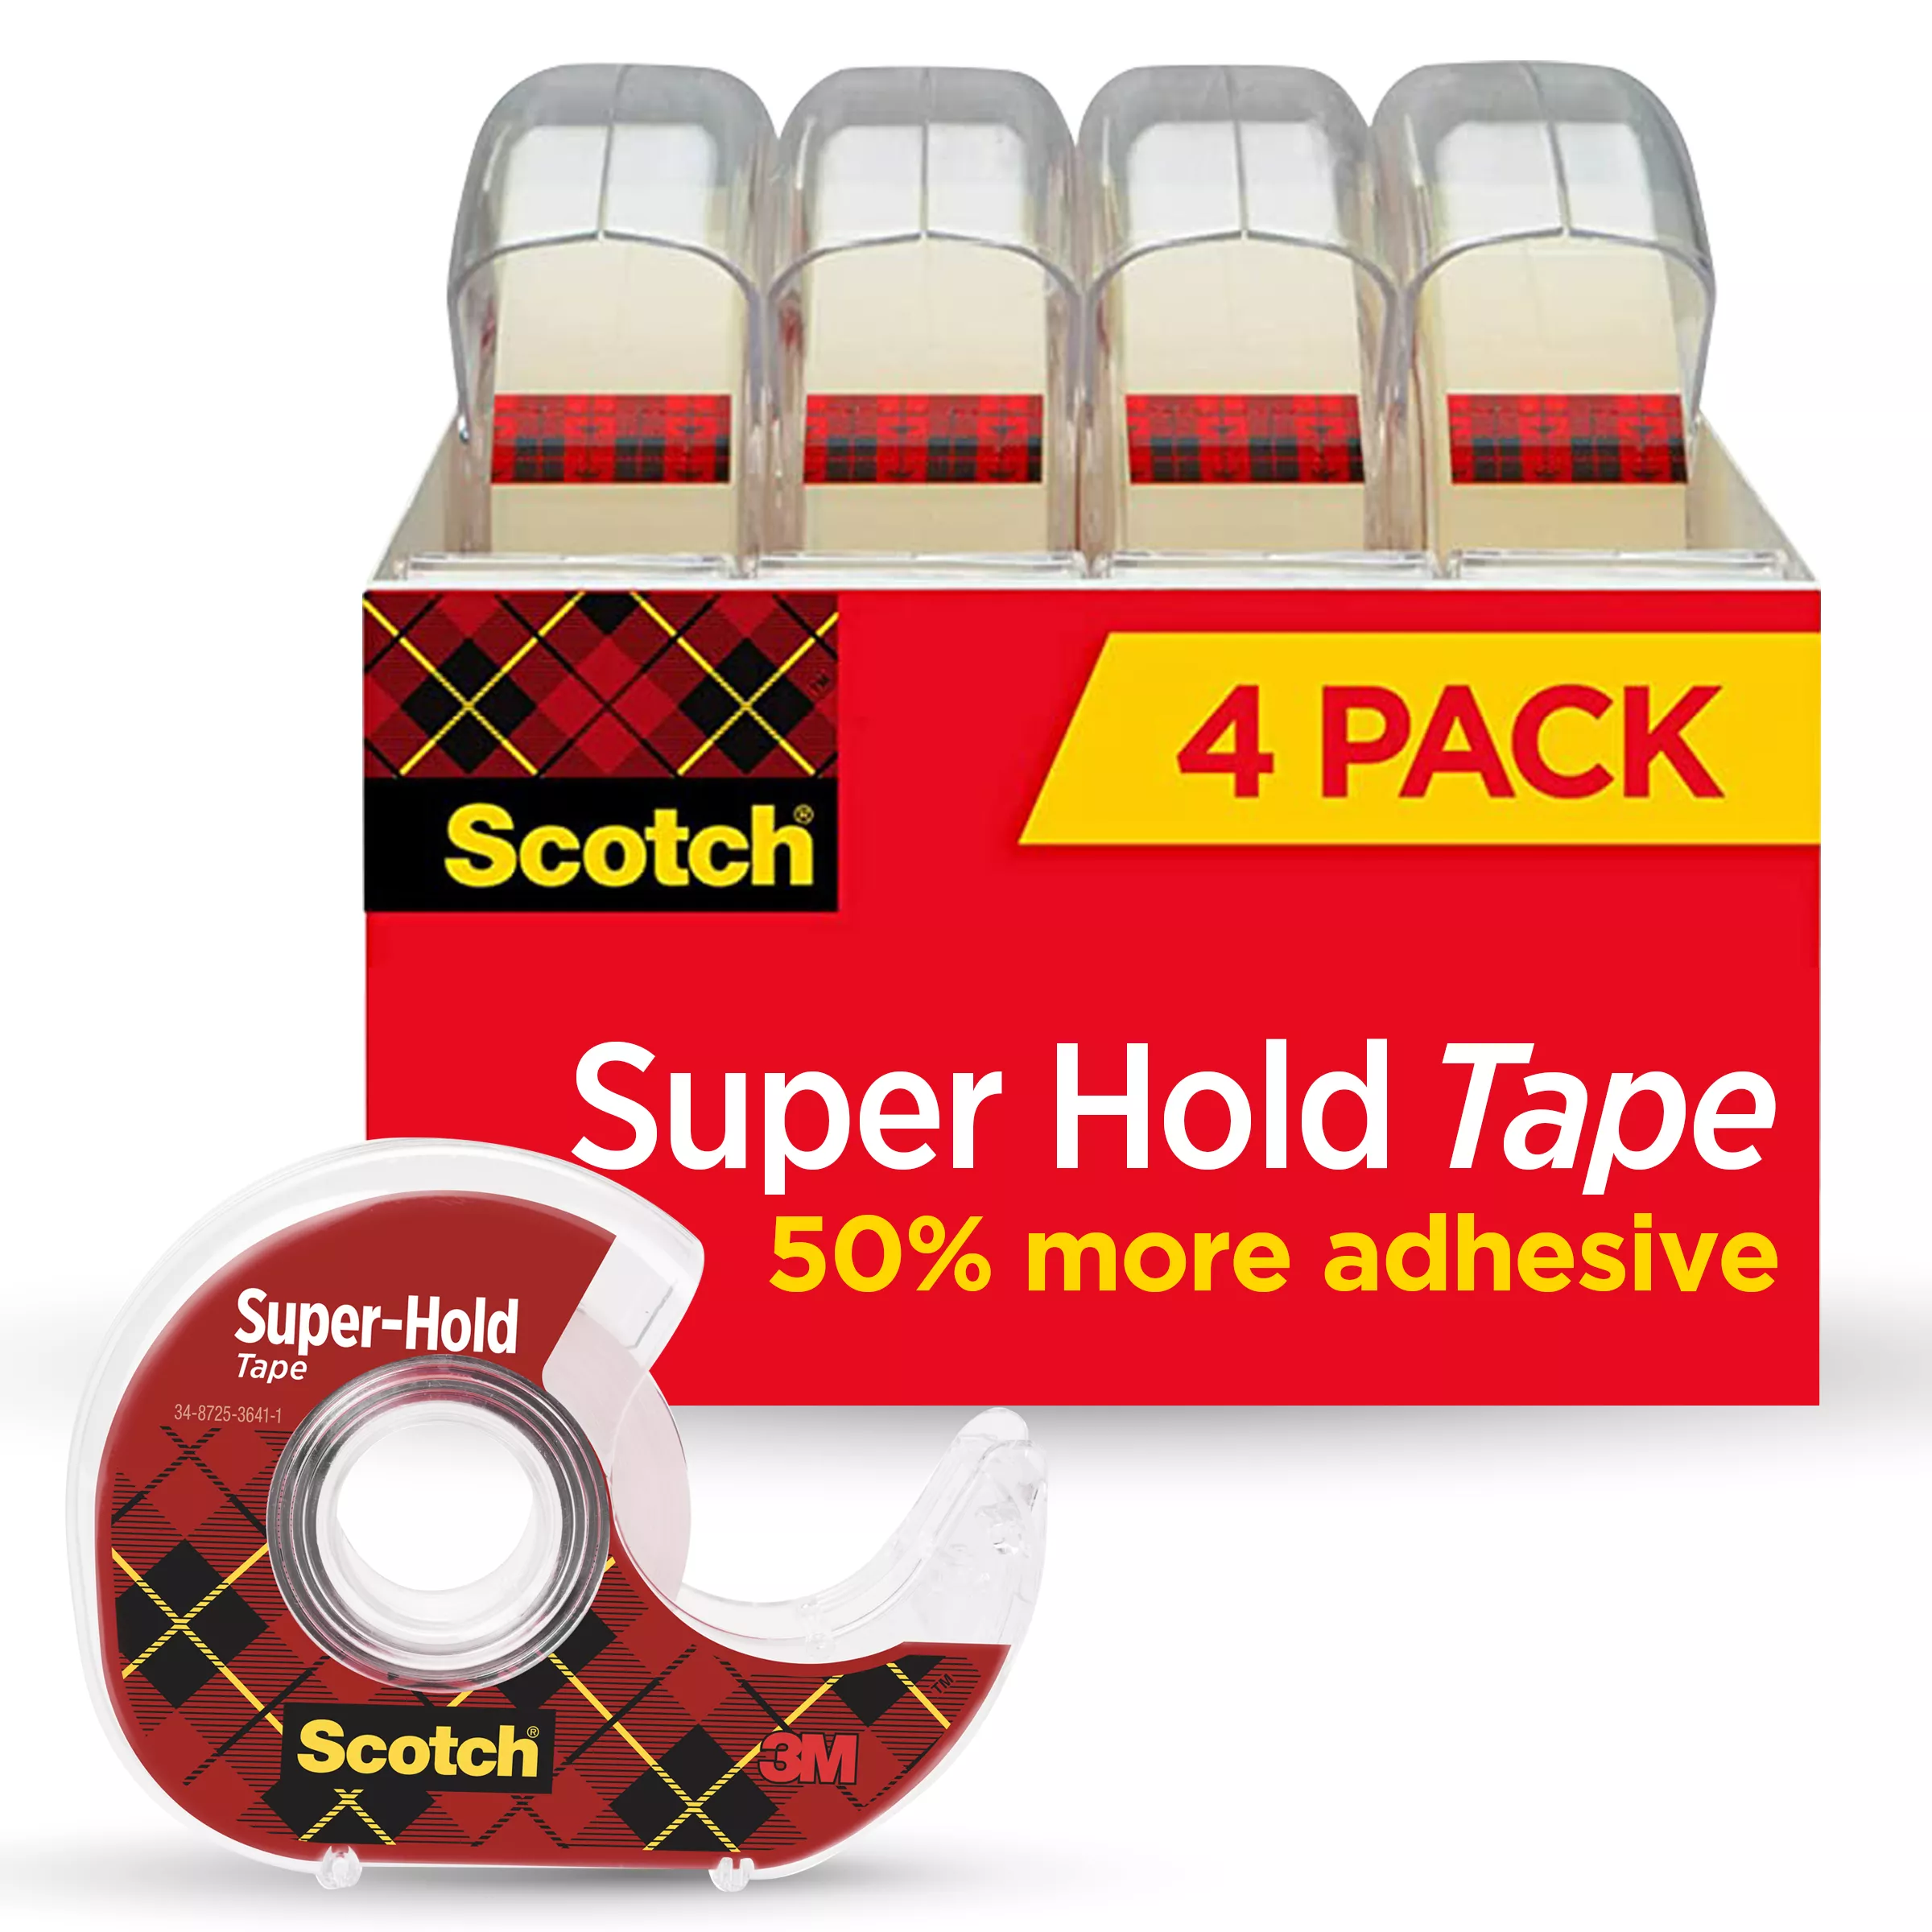 SKU 7100158484 | Scotch® Super-Hold Tape 4198